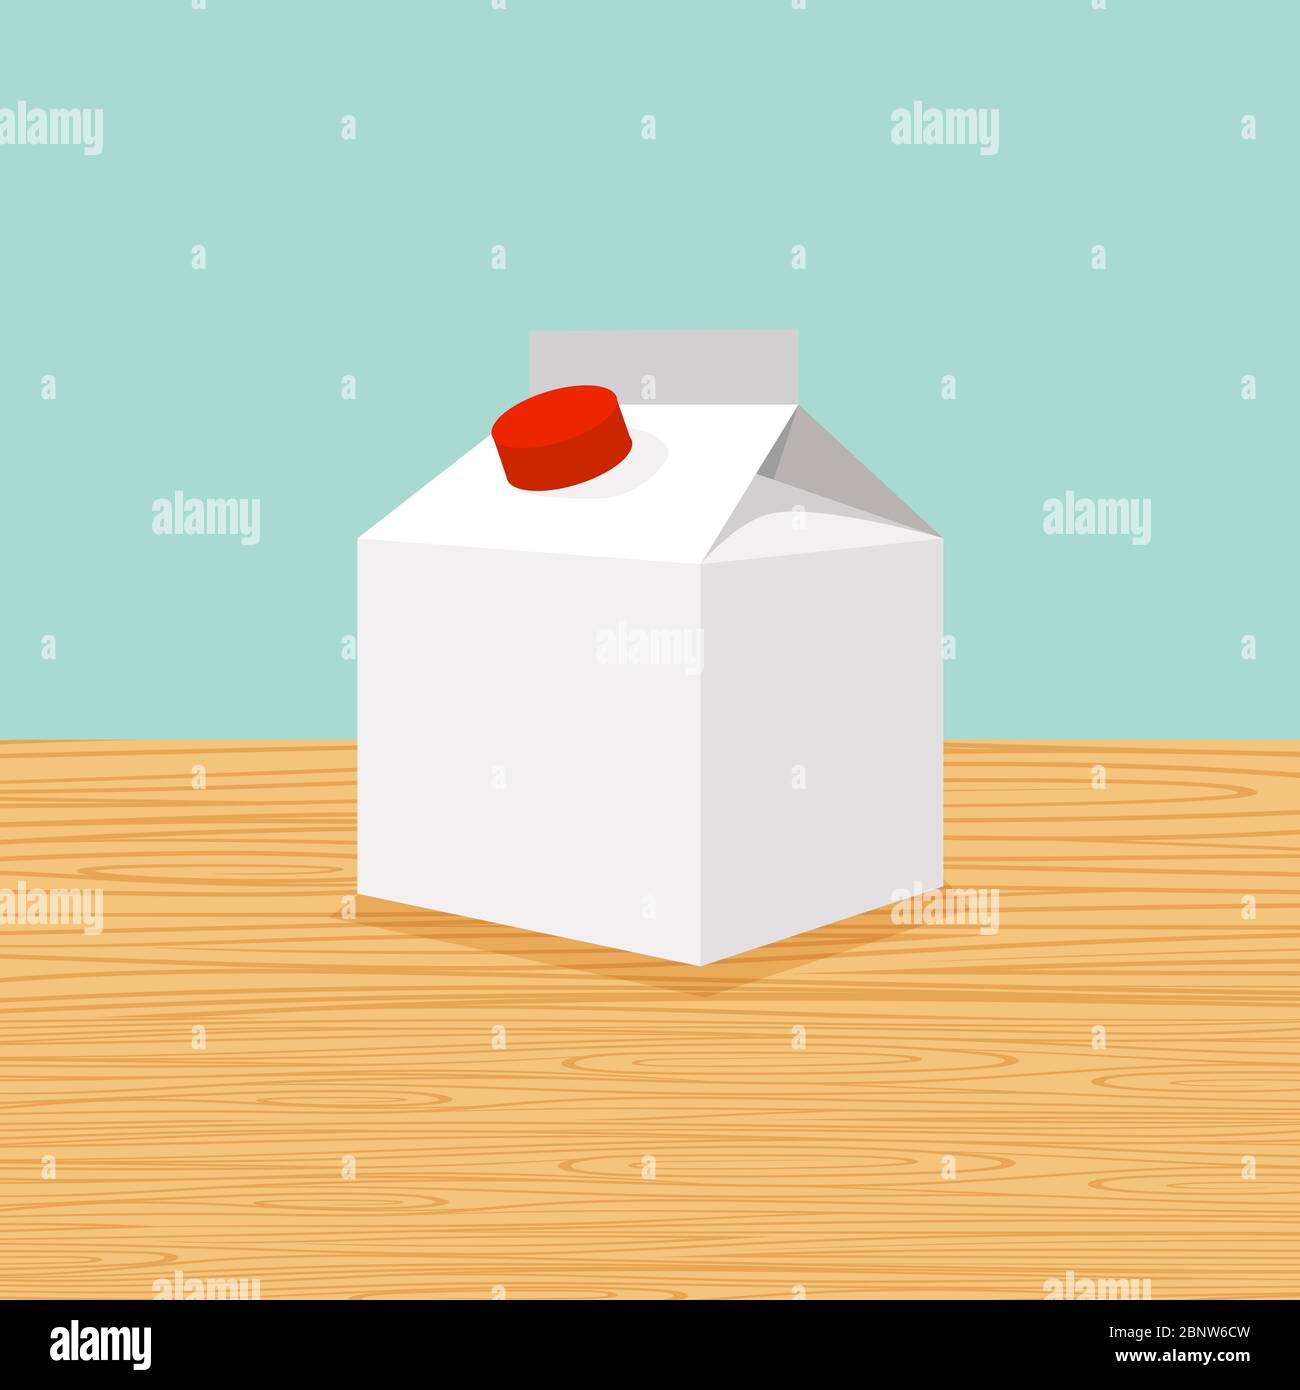 Dessin animé de la ferme fraîche et naturelle de lait sur la table vecteur Illustration de Vecteur